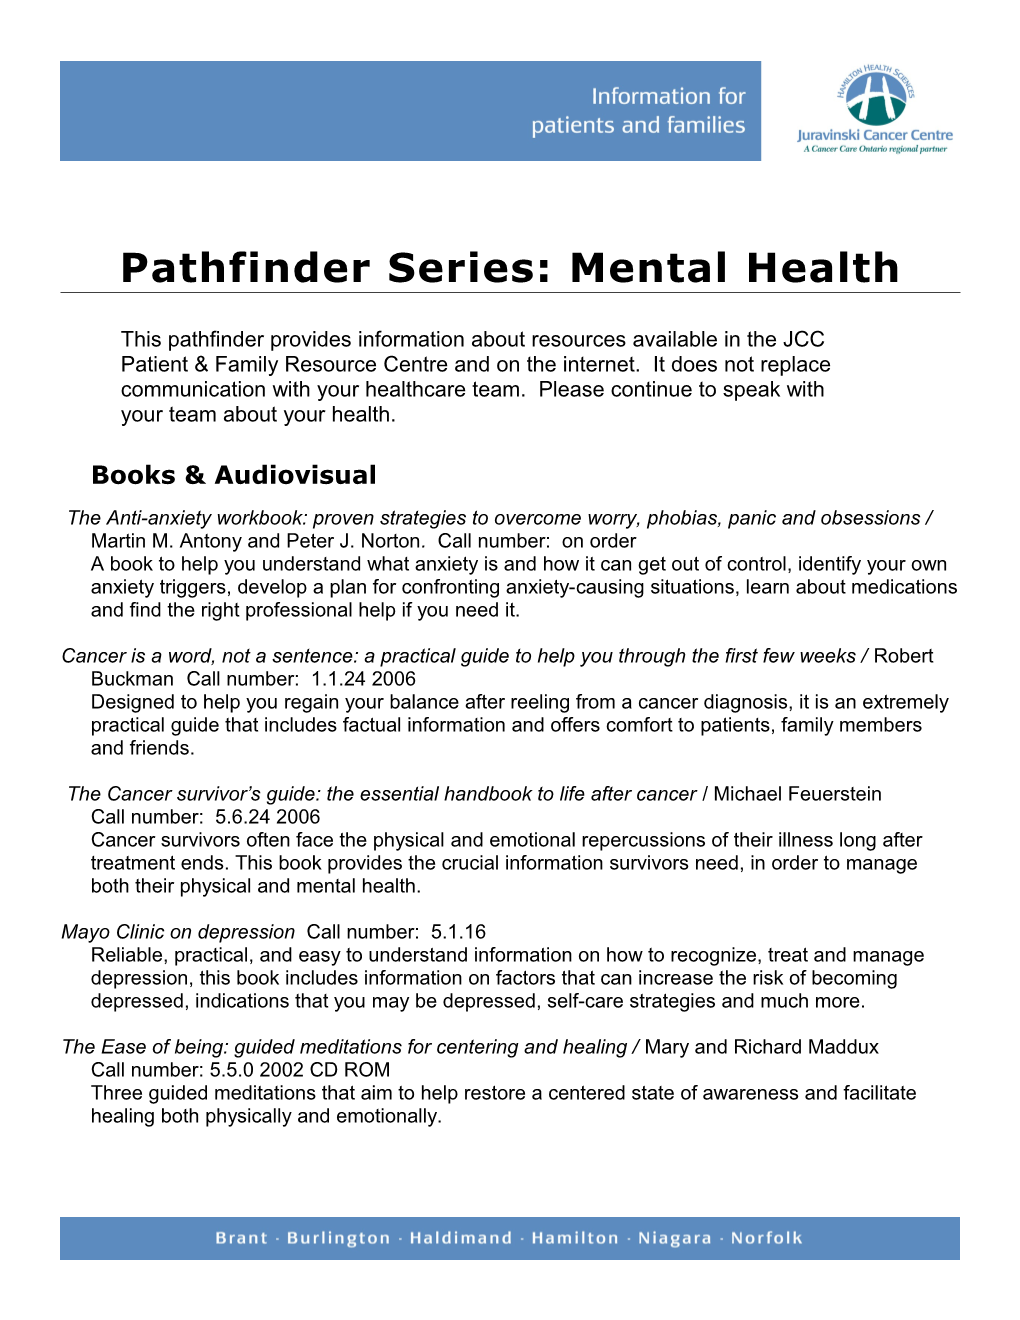 Pathfinder Series: Mental Health